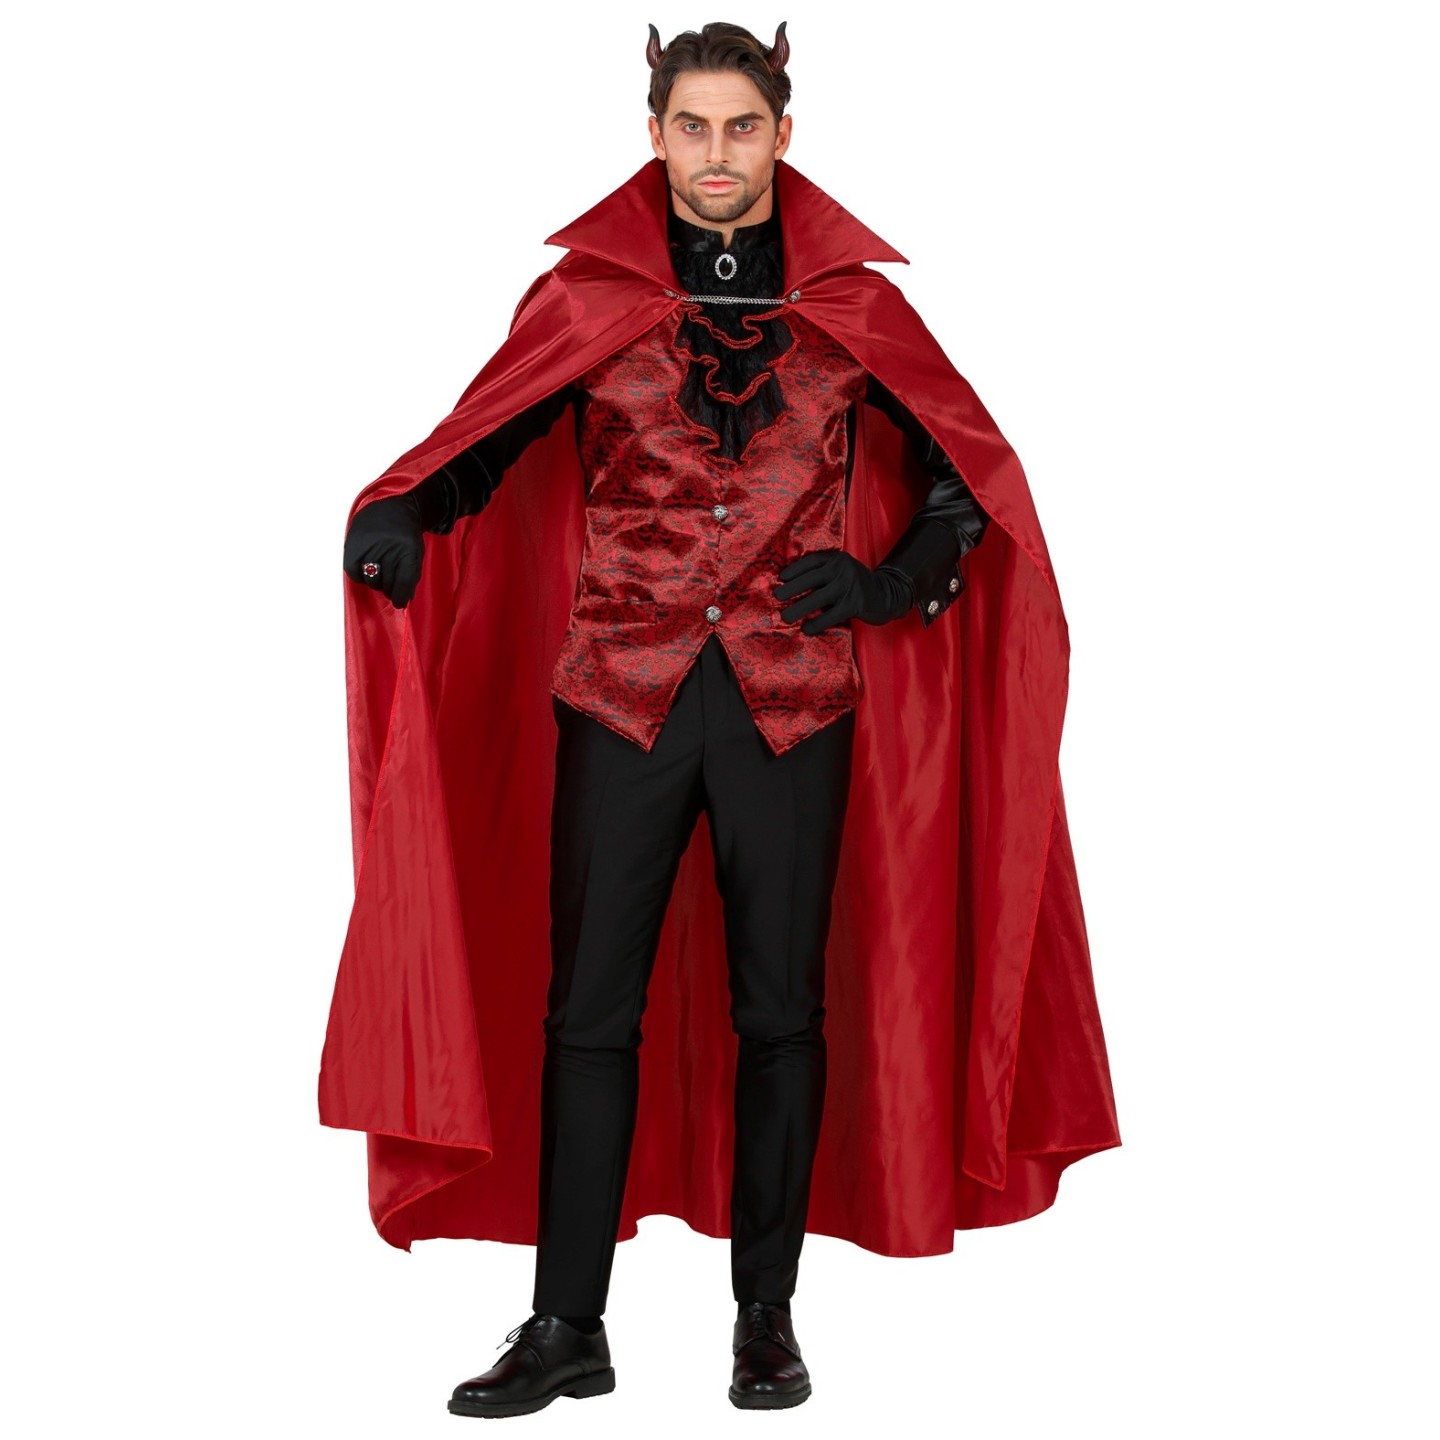 Permanent Klem litteken Duivel kostuum met cape heren | Jokershop.be - Halloween kledij